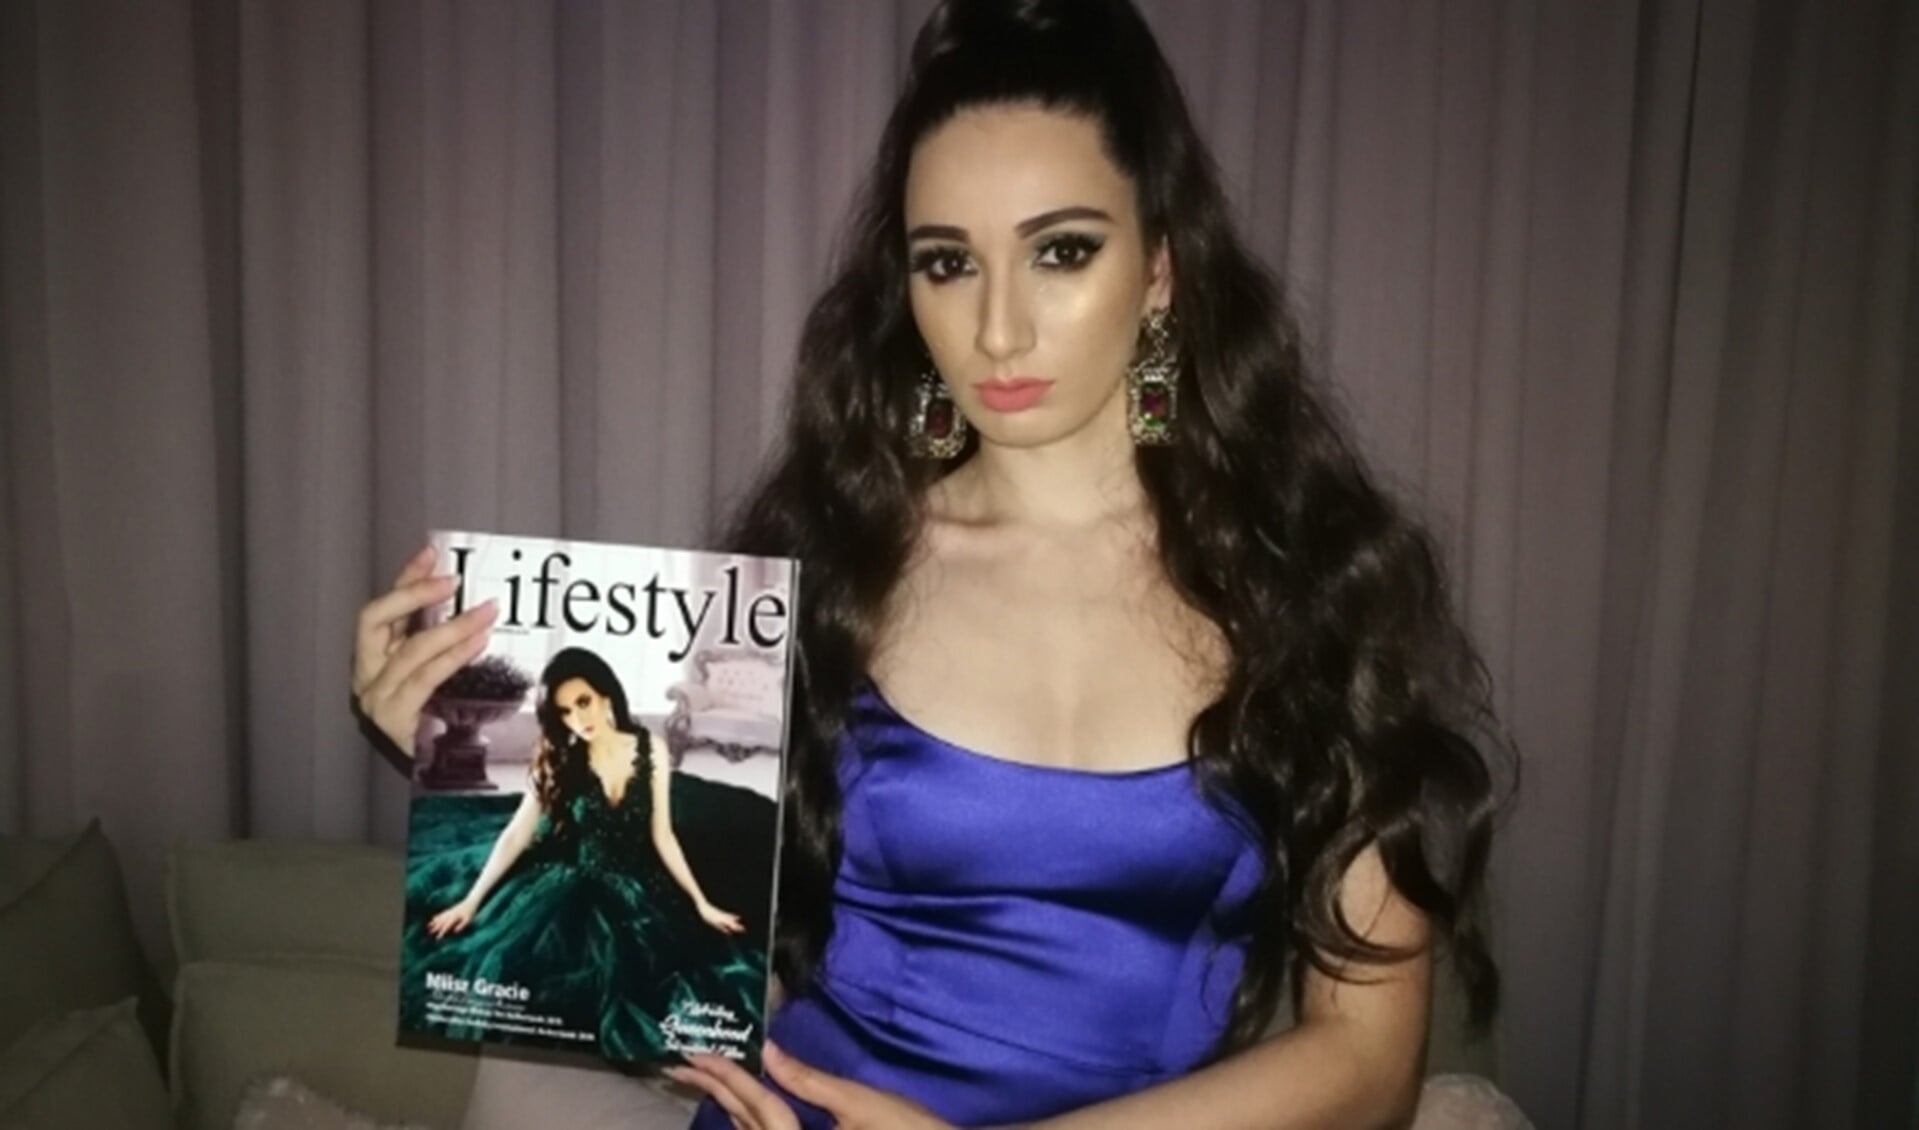 Miisz Gracie presenteert Lifestyle Magazine waarvan zij op de cover staat